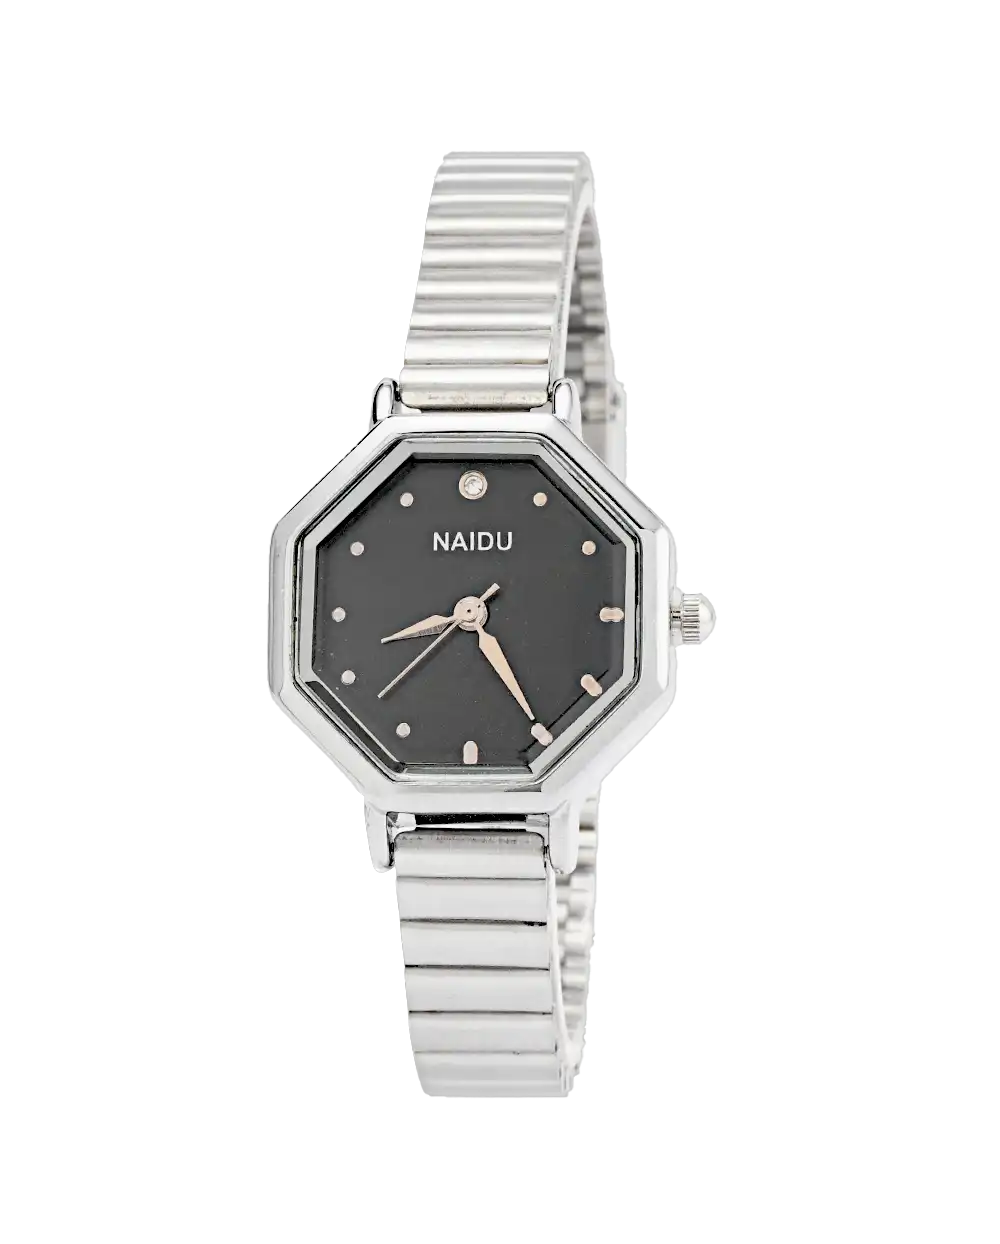 خرید ساعت مچی زنانه نایدو NAIDU مدل 1756 با بهترین قیمت به همراه ارسال رایگان به سراسر ایران و جعبه ی ساعت | ساعت naidu